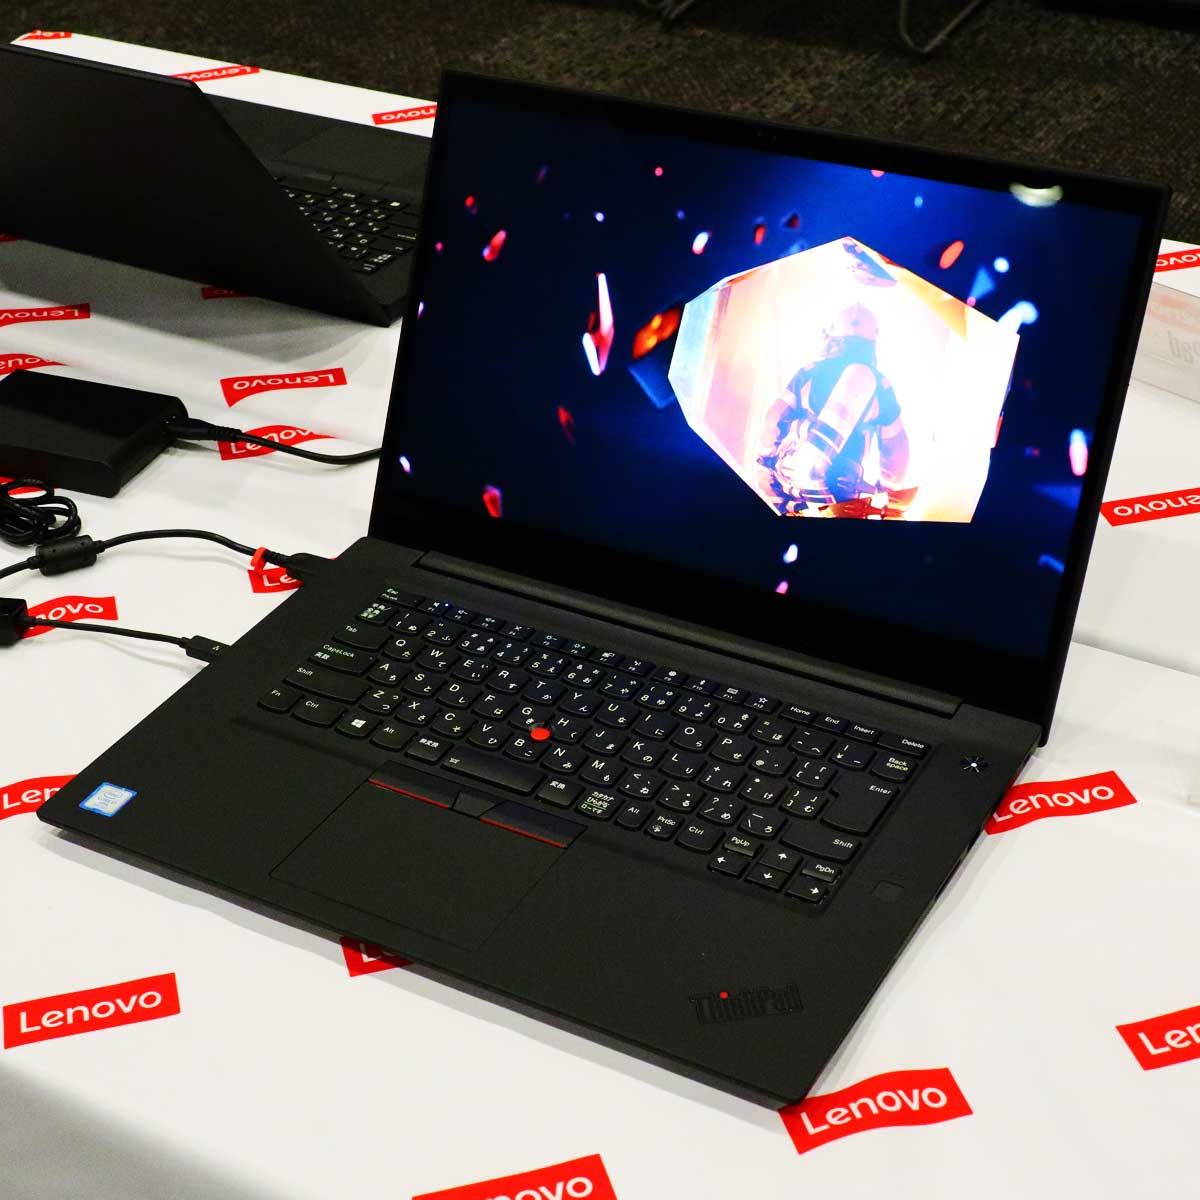 レノボ「ThinkPad X1 Extreme」、薄型・軽量ボディに「GeForce GTX